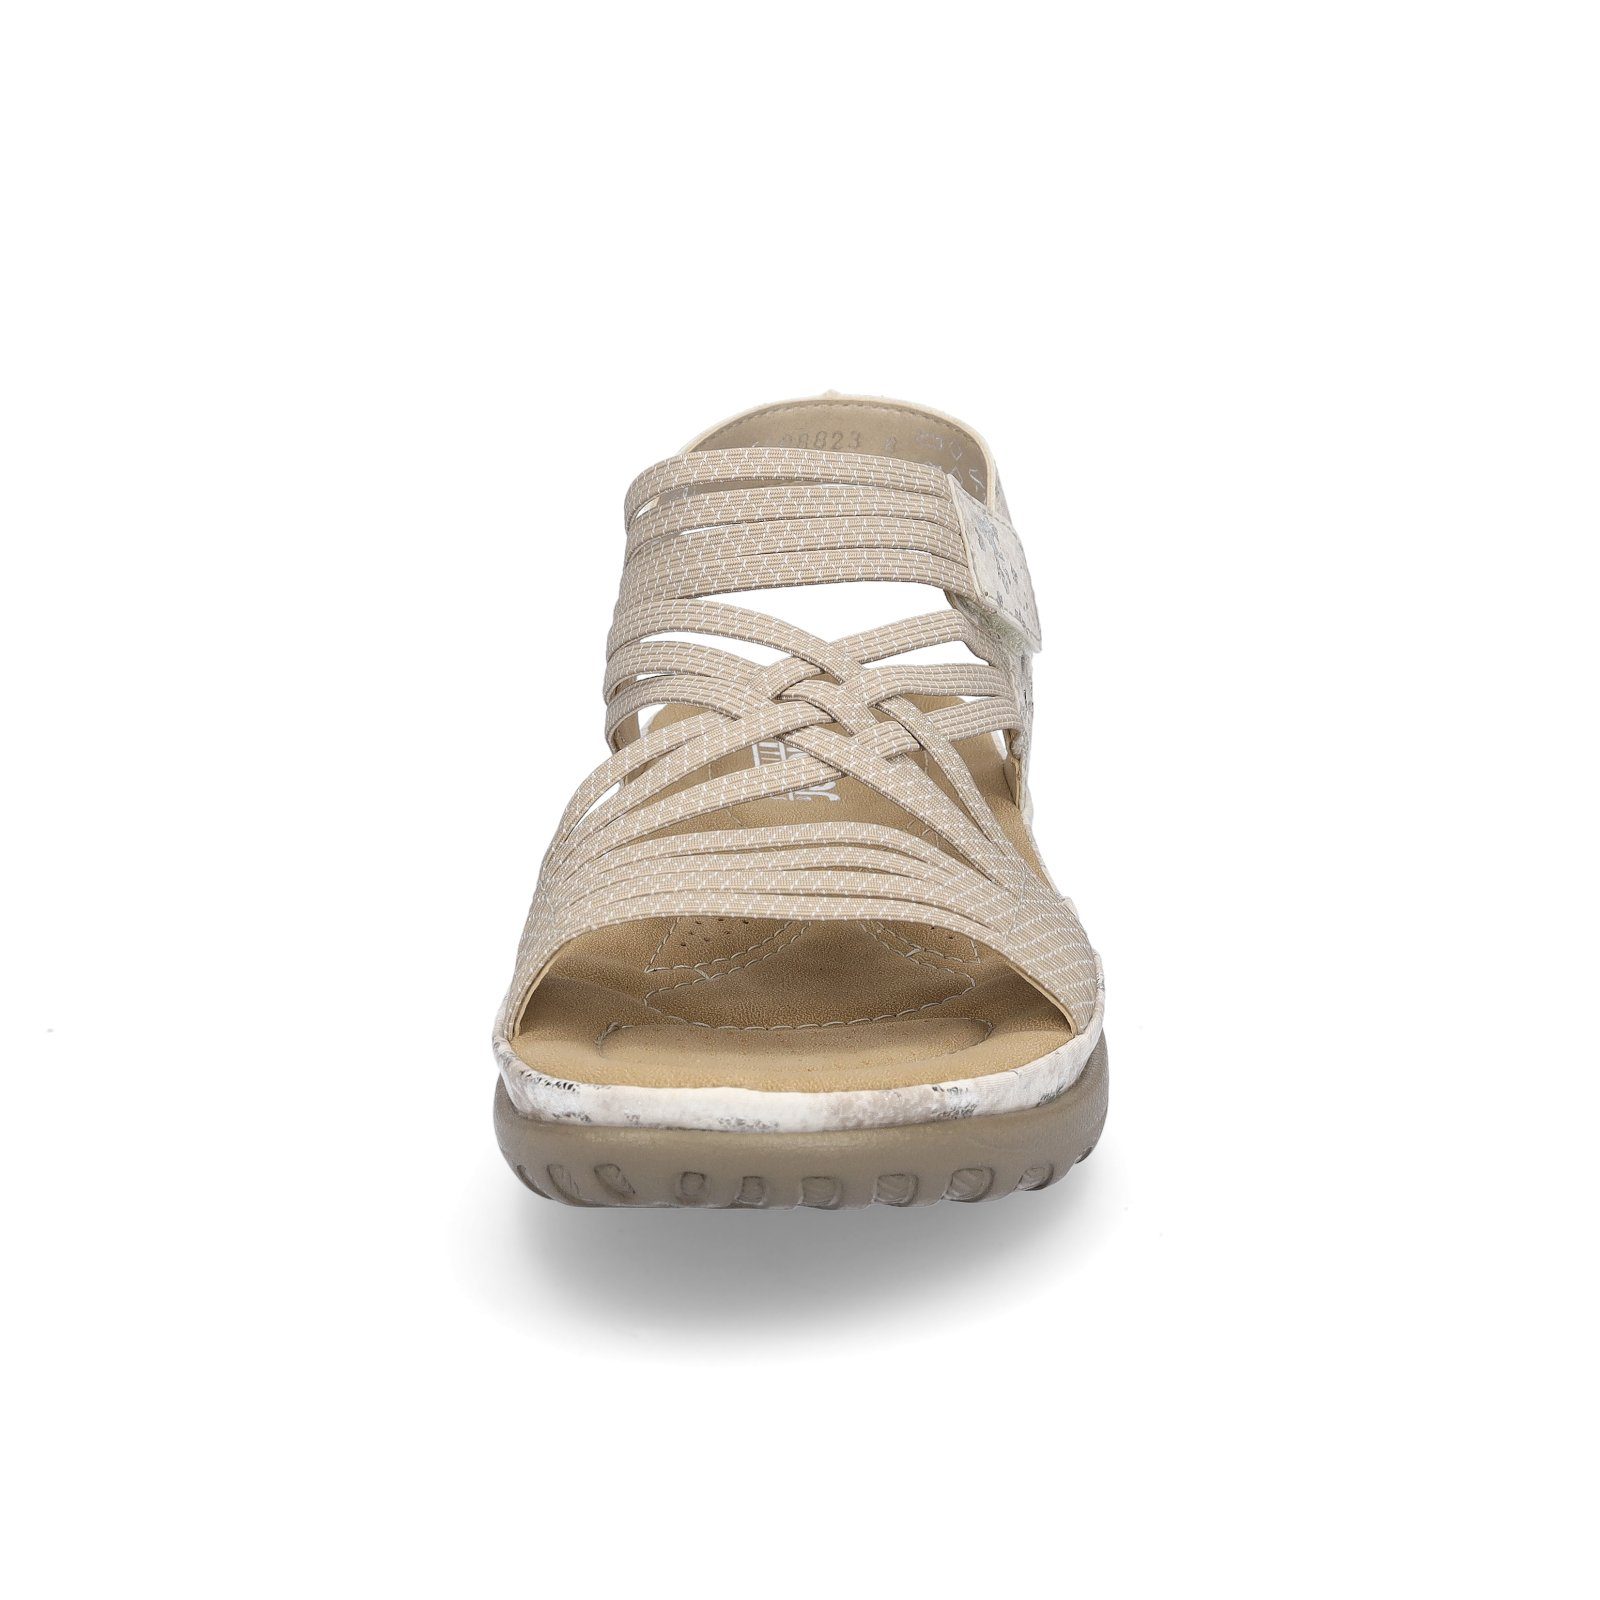 Rieker Rieker beige metallic Sandale Sandale Trekking Damen